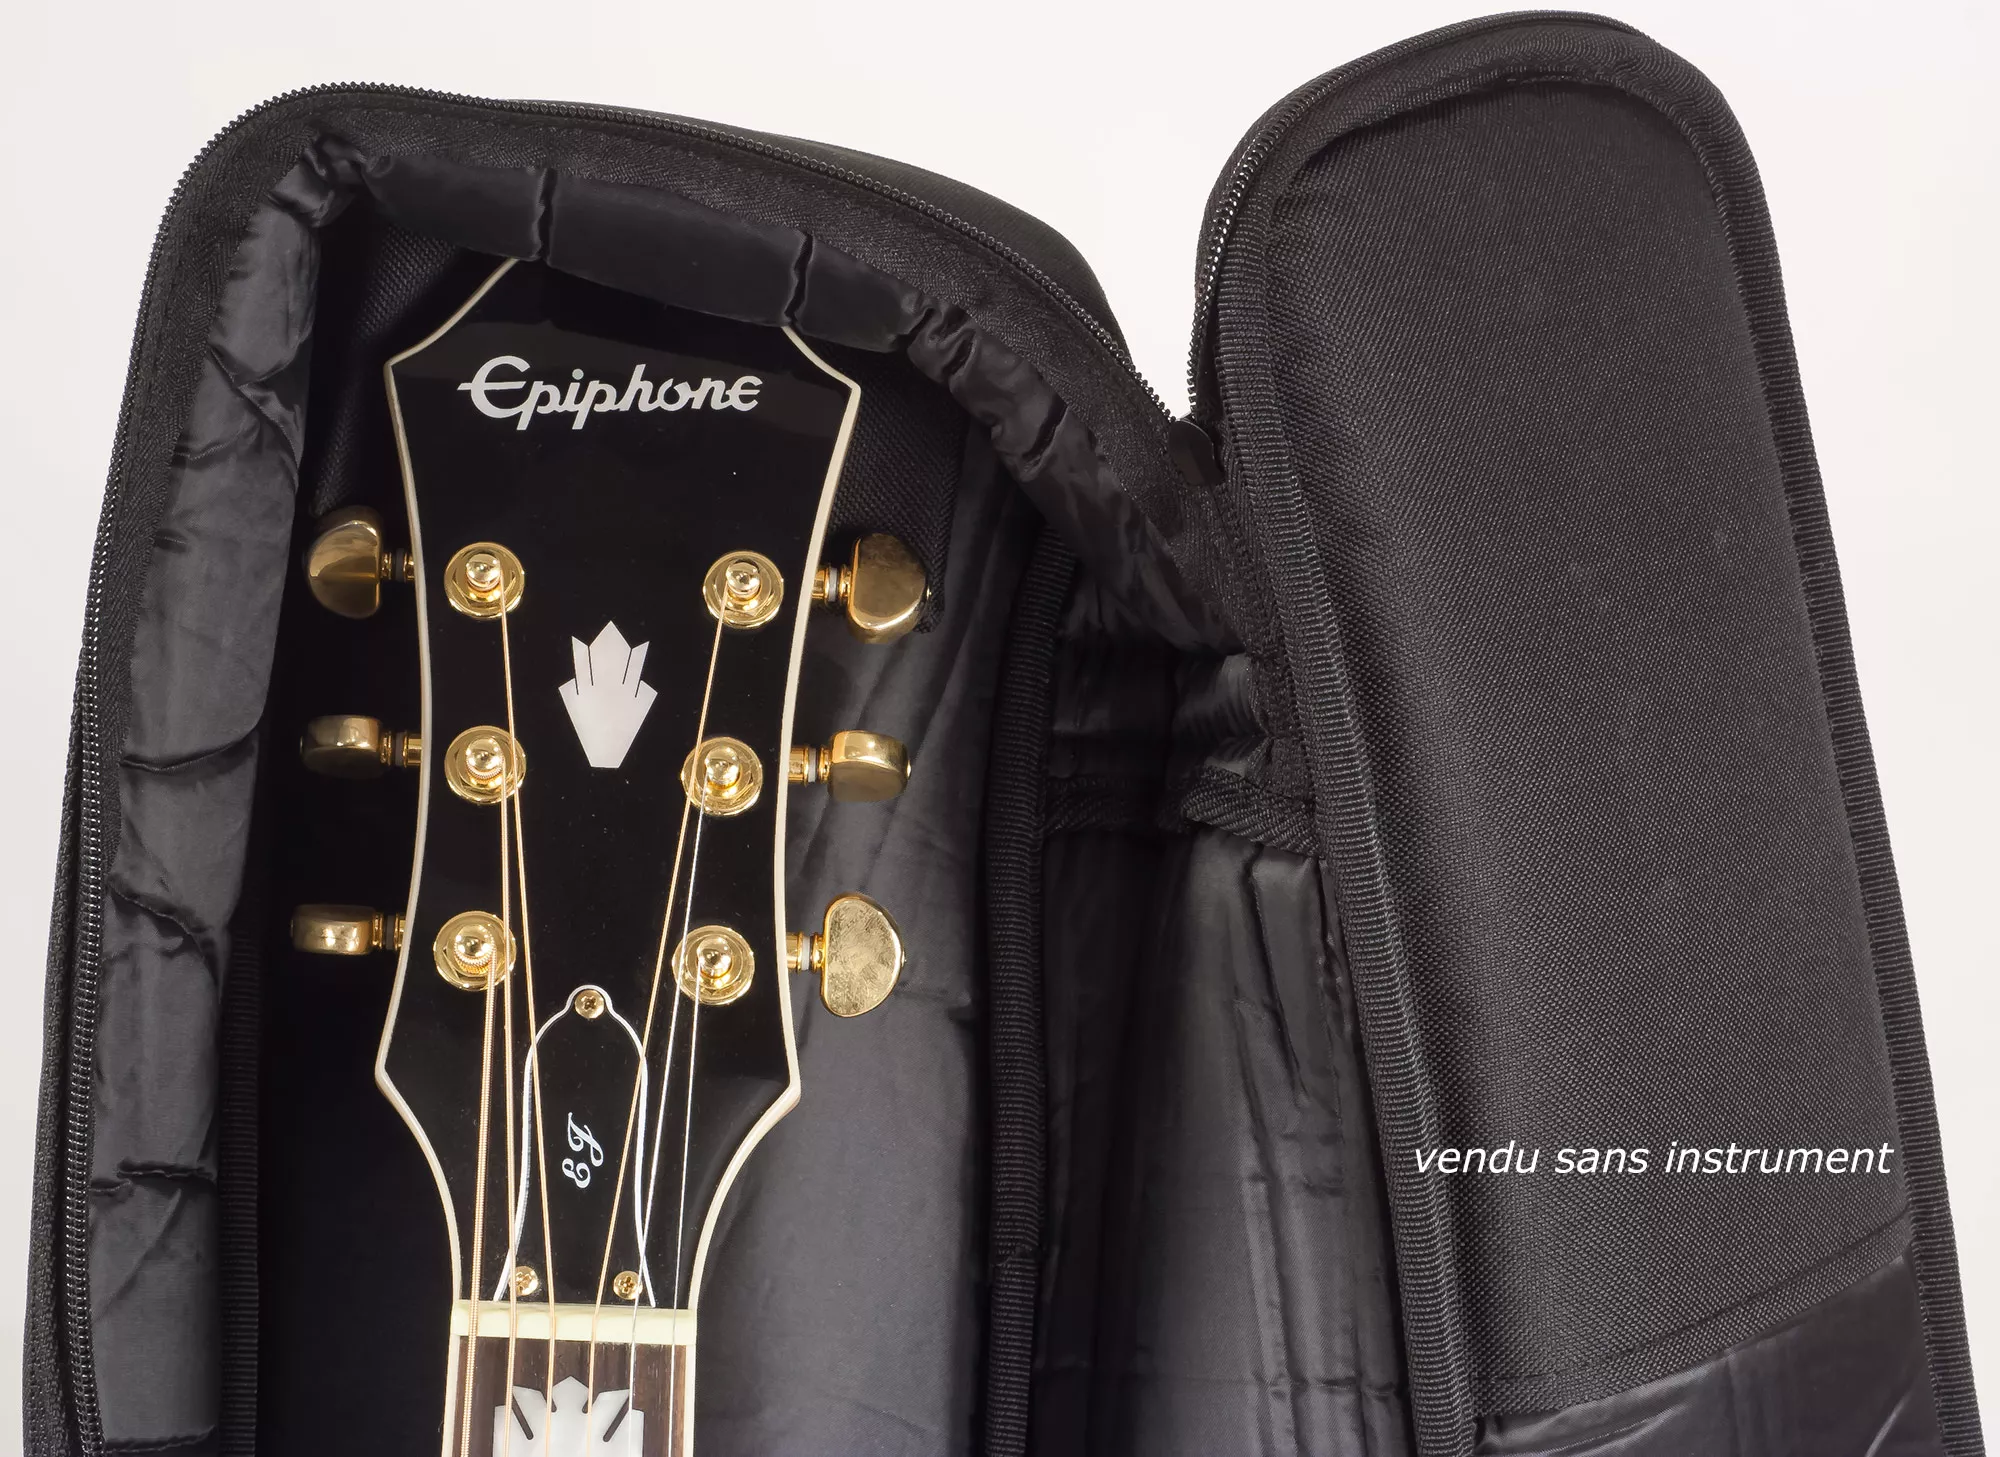 Housse pour guitare acoustique Sacoche Premium 4/4 M-case Jaune